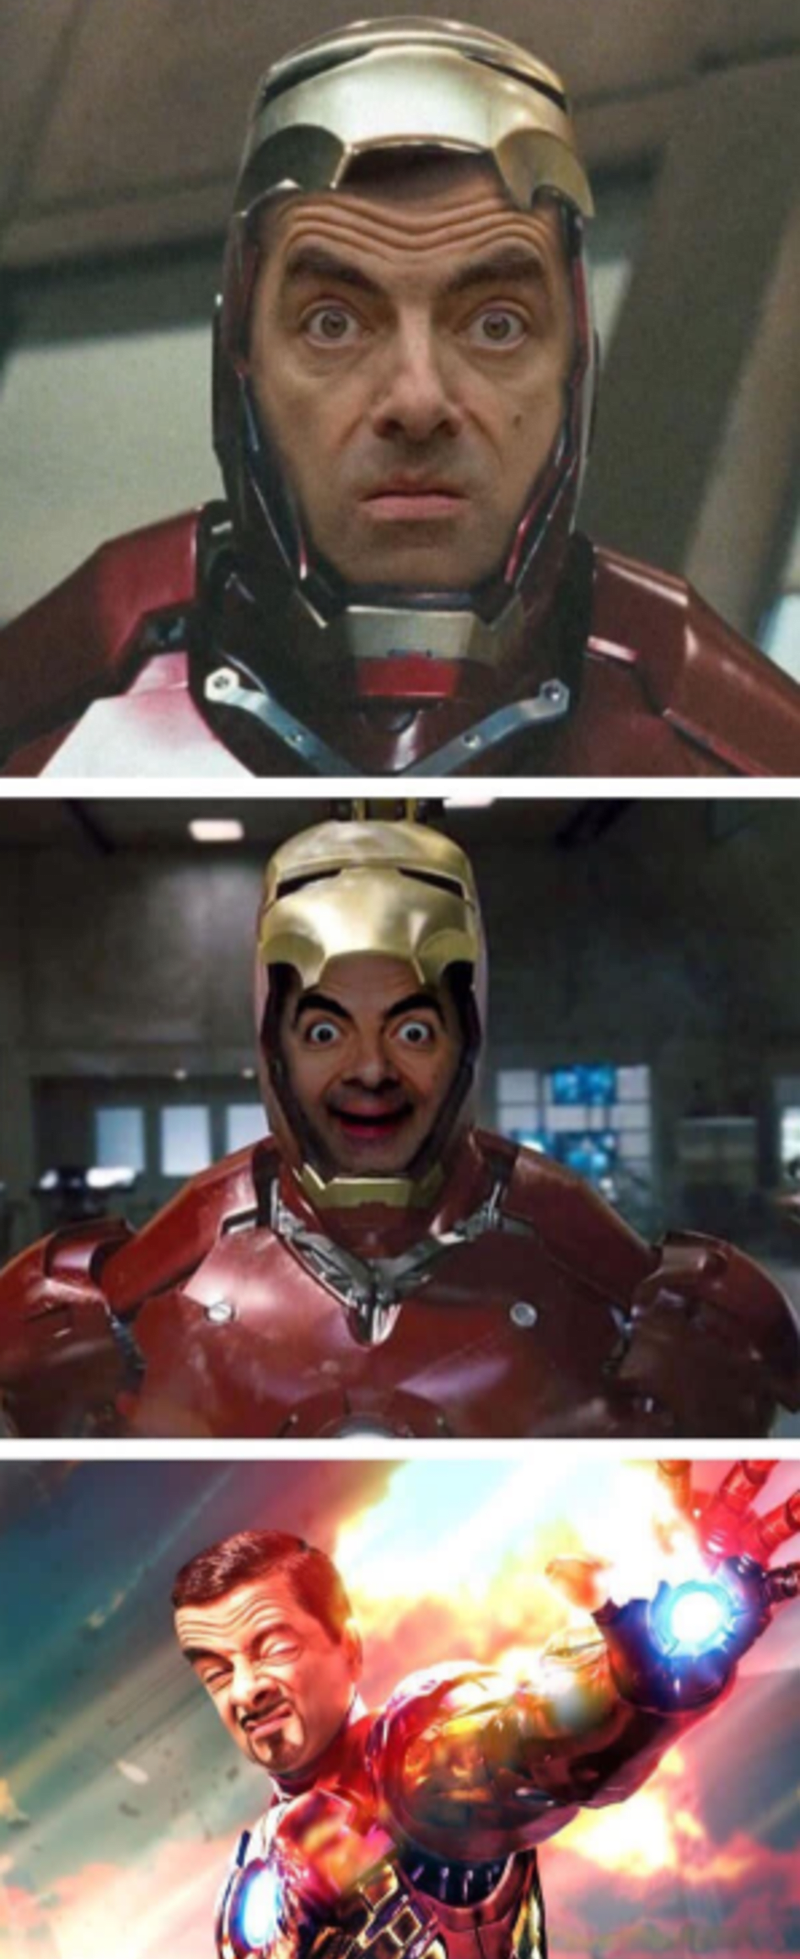 Mr. Iron Bean